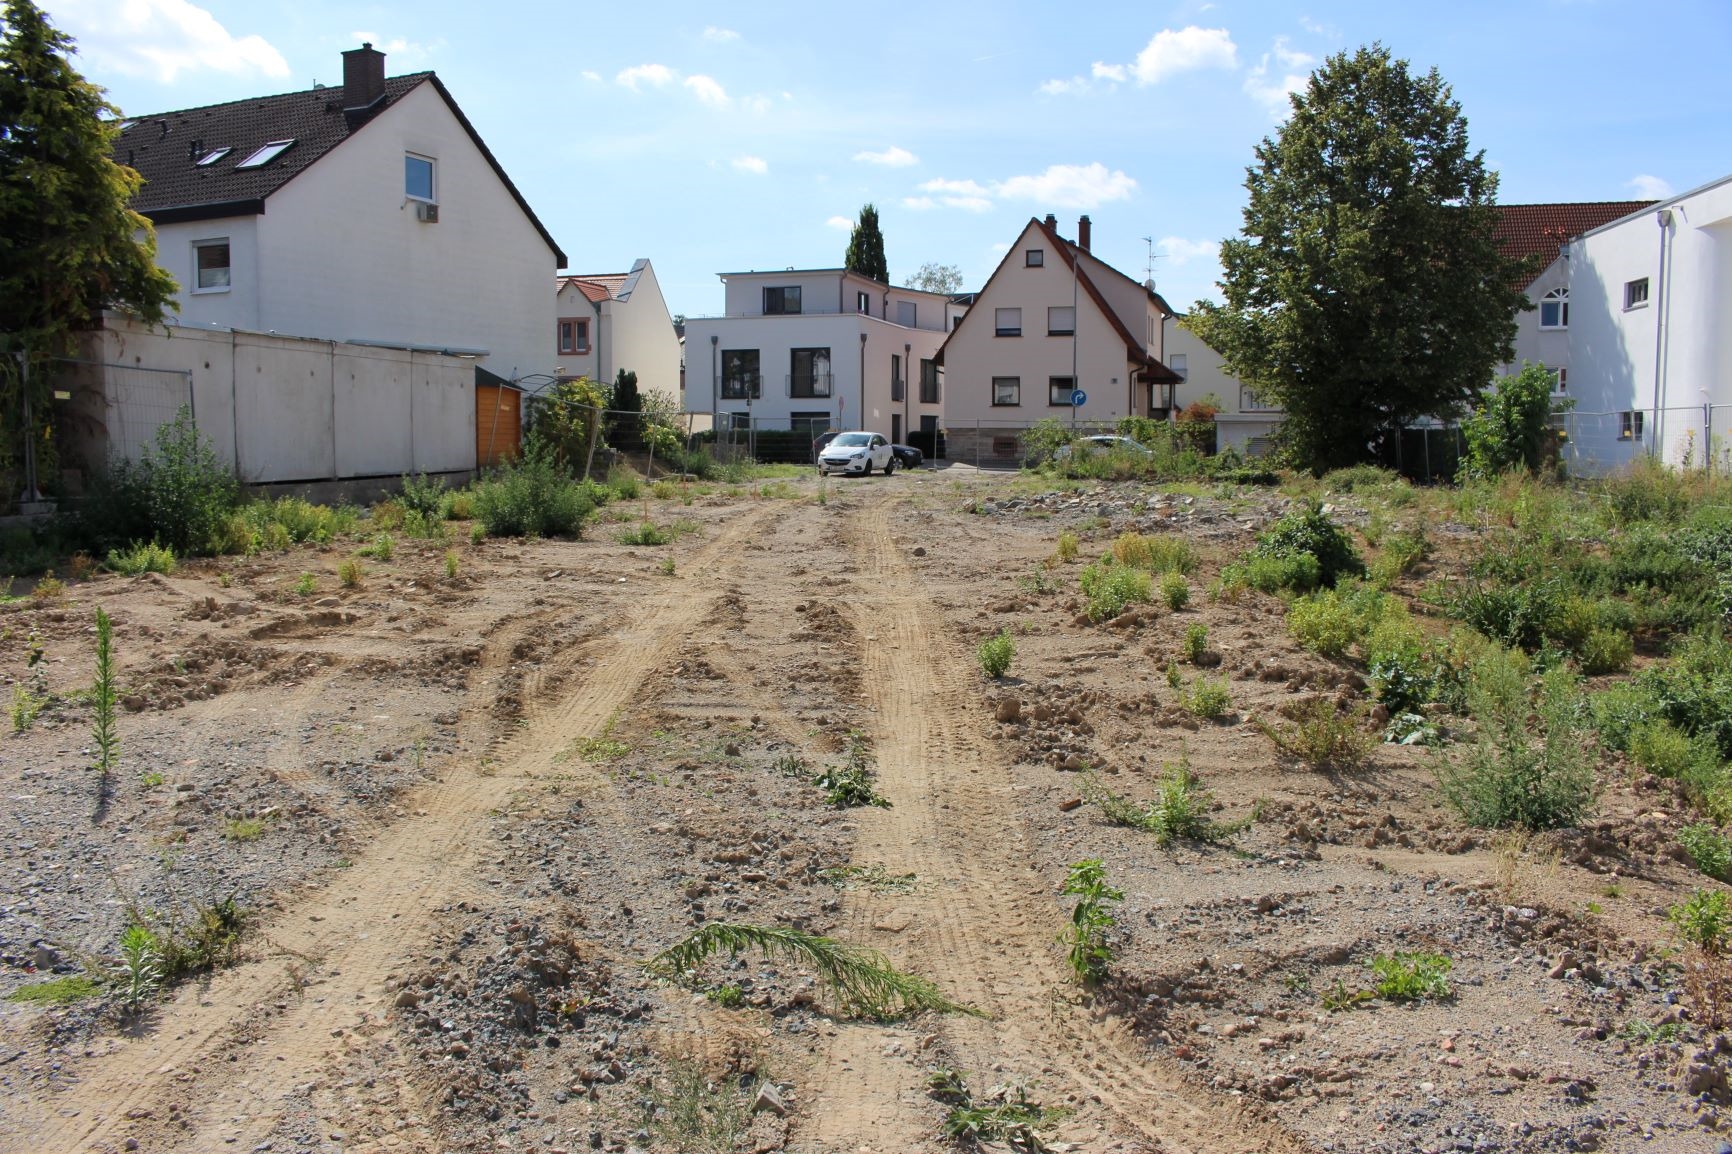 Ansicht vom Gelände, Häuser im Hintergrund. (Caritasverband Darmstadt e. V.)